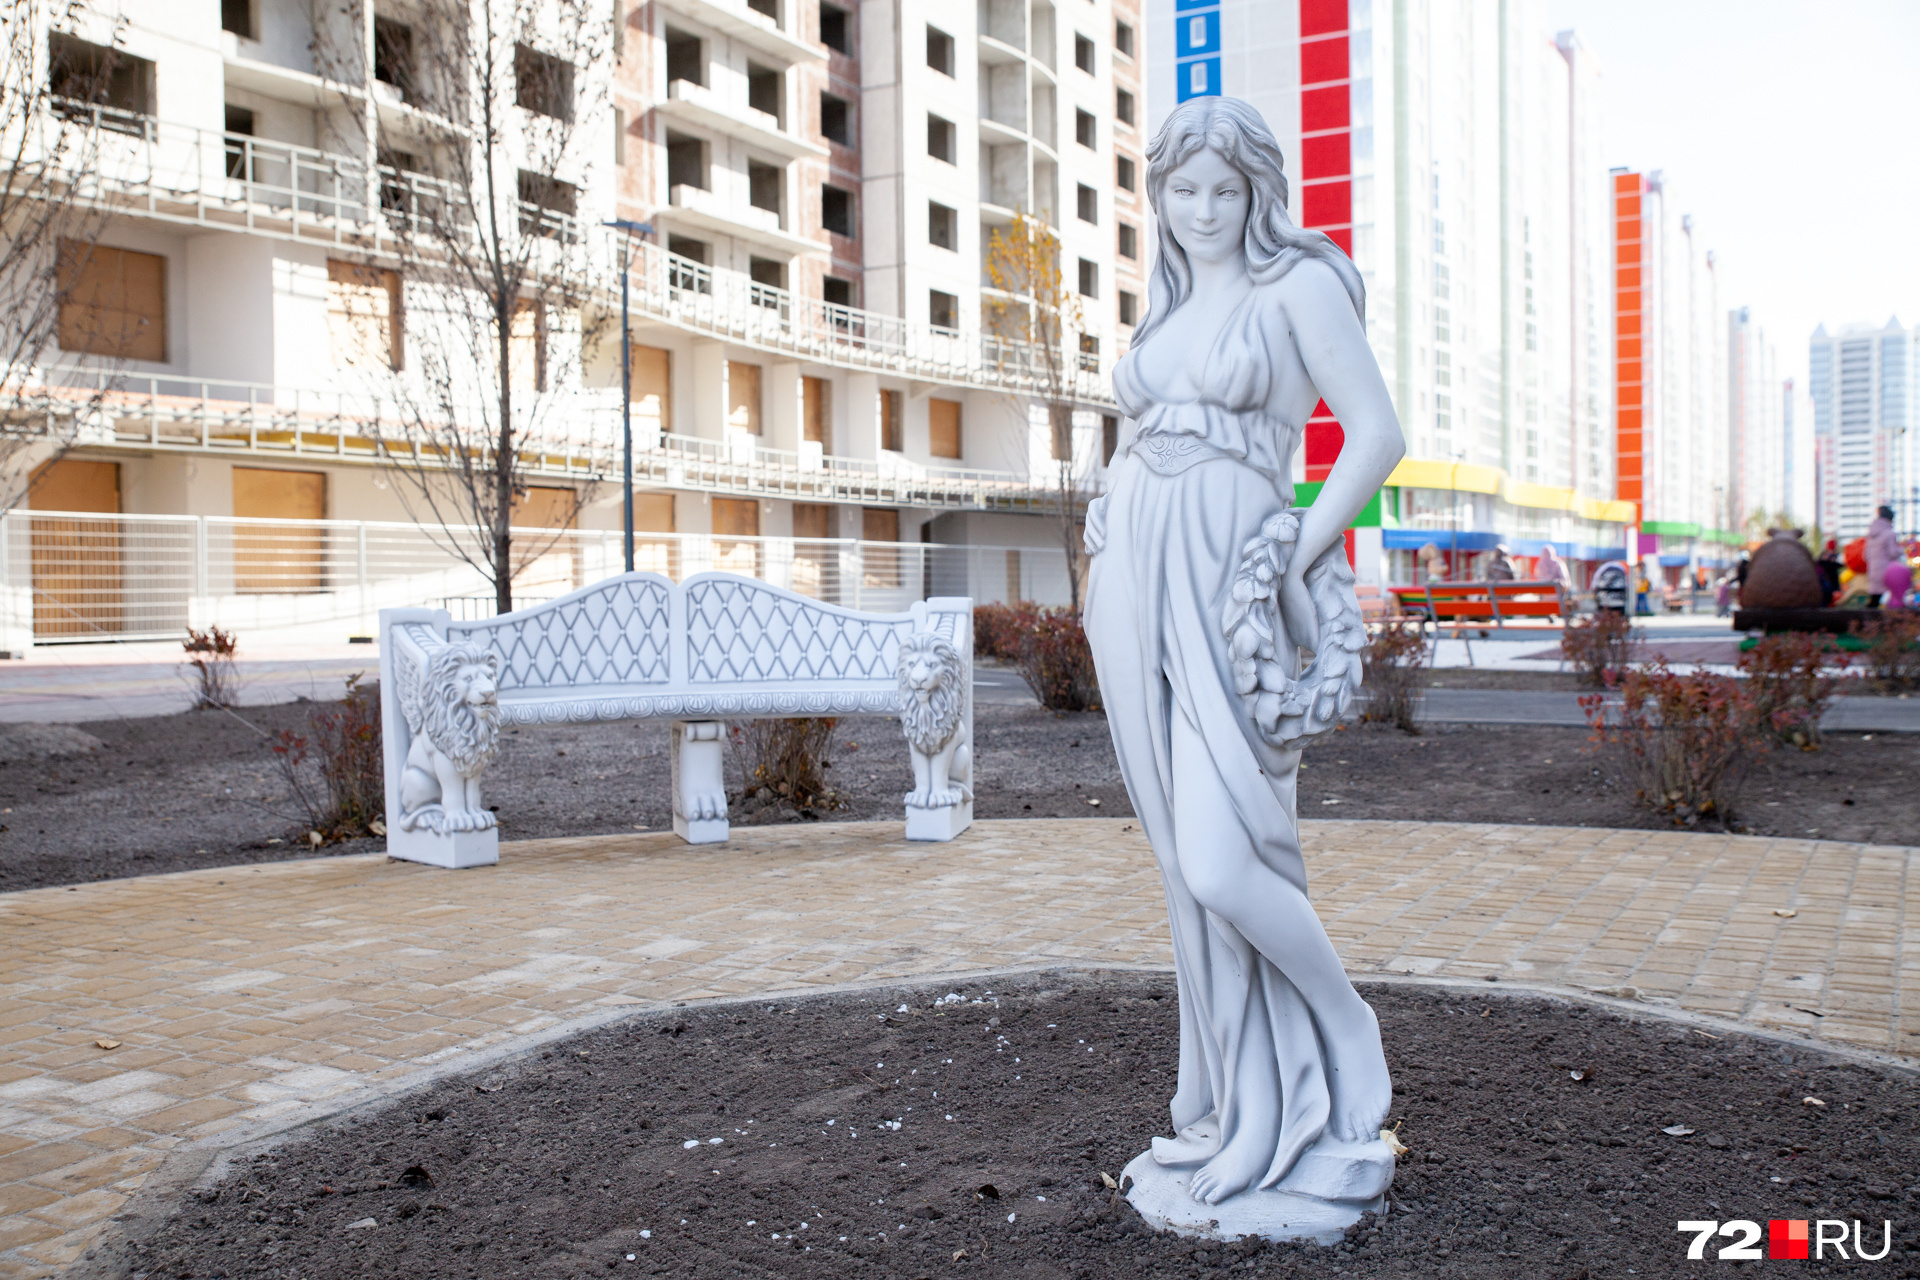 Статуи в античном стиле раскритиковал известный урбанист Илья Варламов. А местные жители с удовольствием любуются ими по пути на остановку